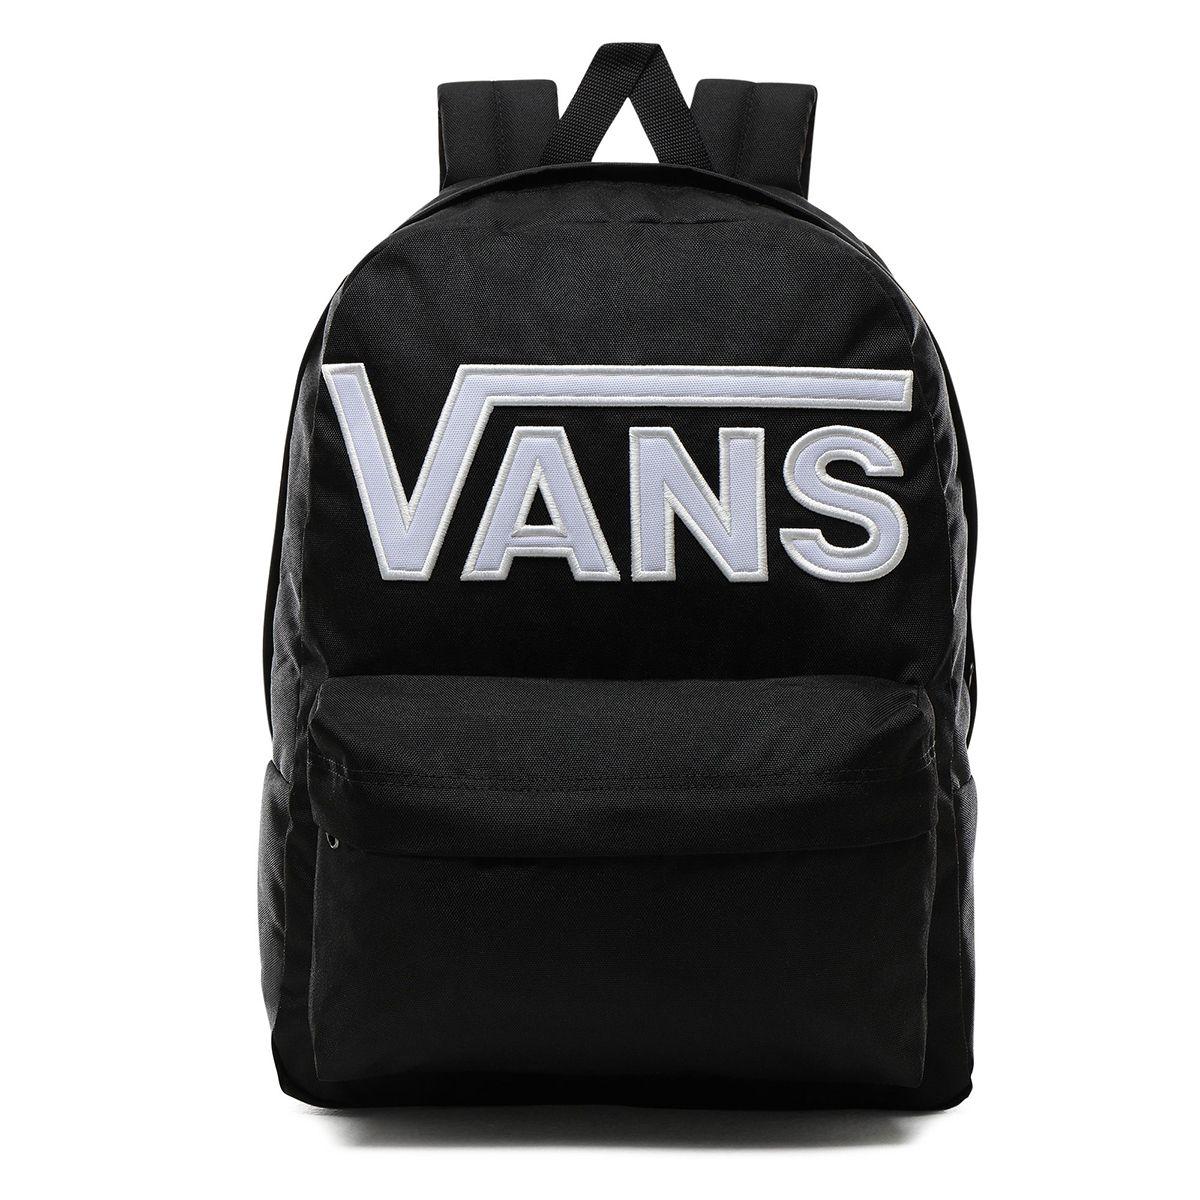 VANS Backpack “Old Skool III” black 